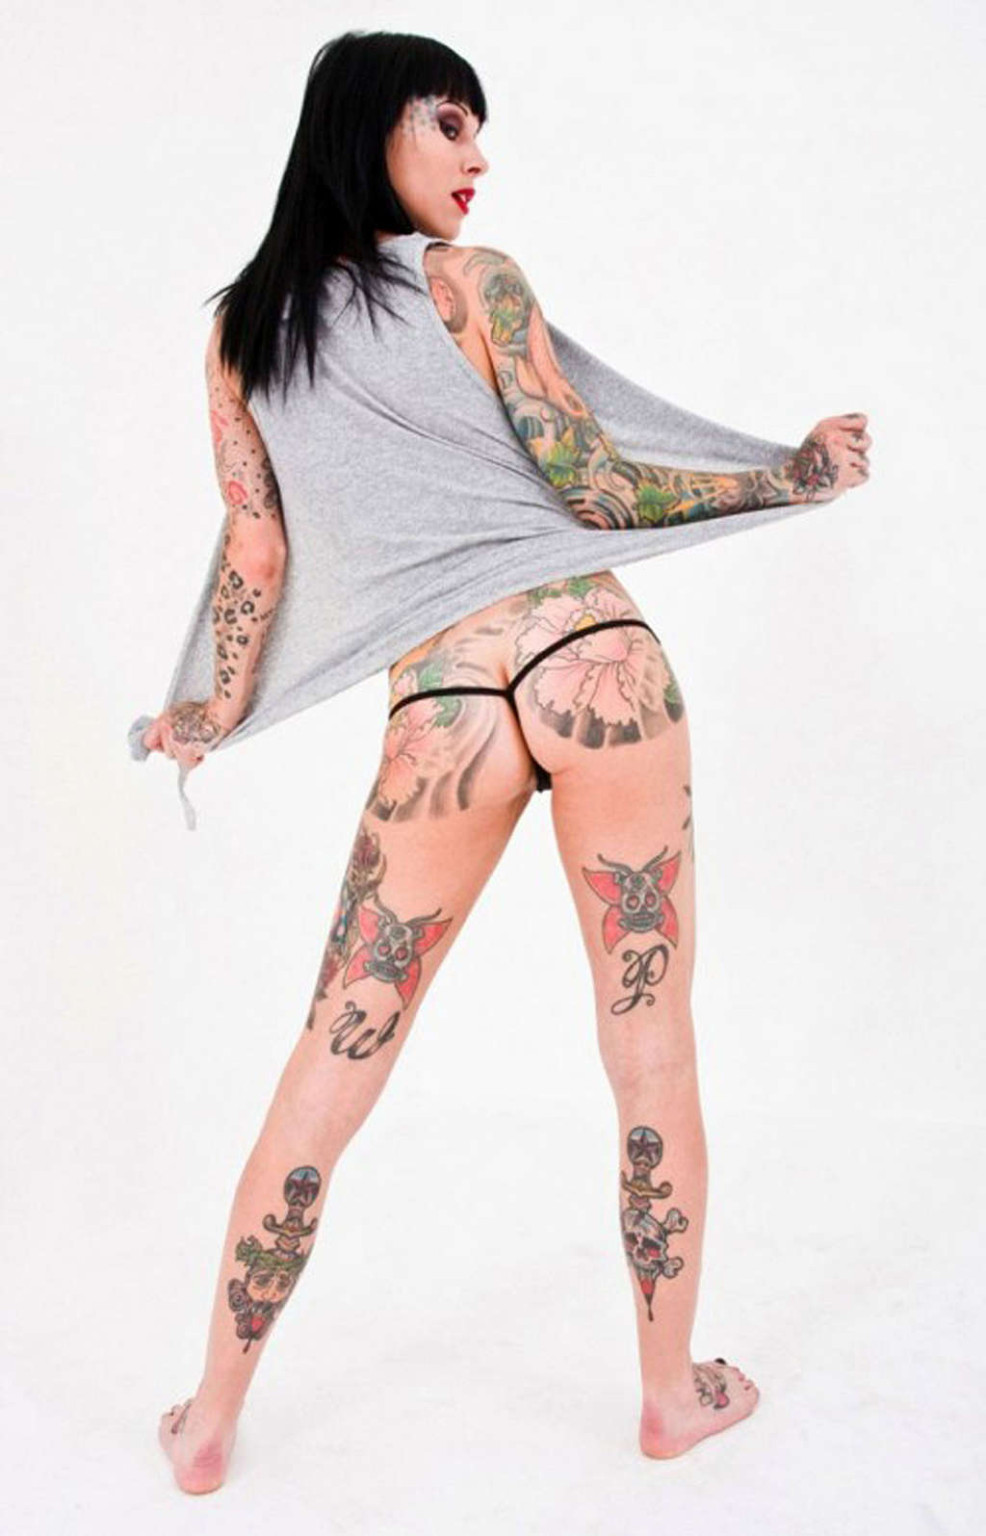 Michelle bombshell zeigt ihren nackten Körper und sexy Tattoos
 #75354899